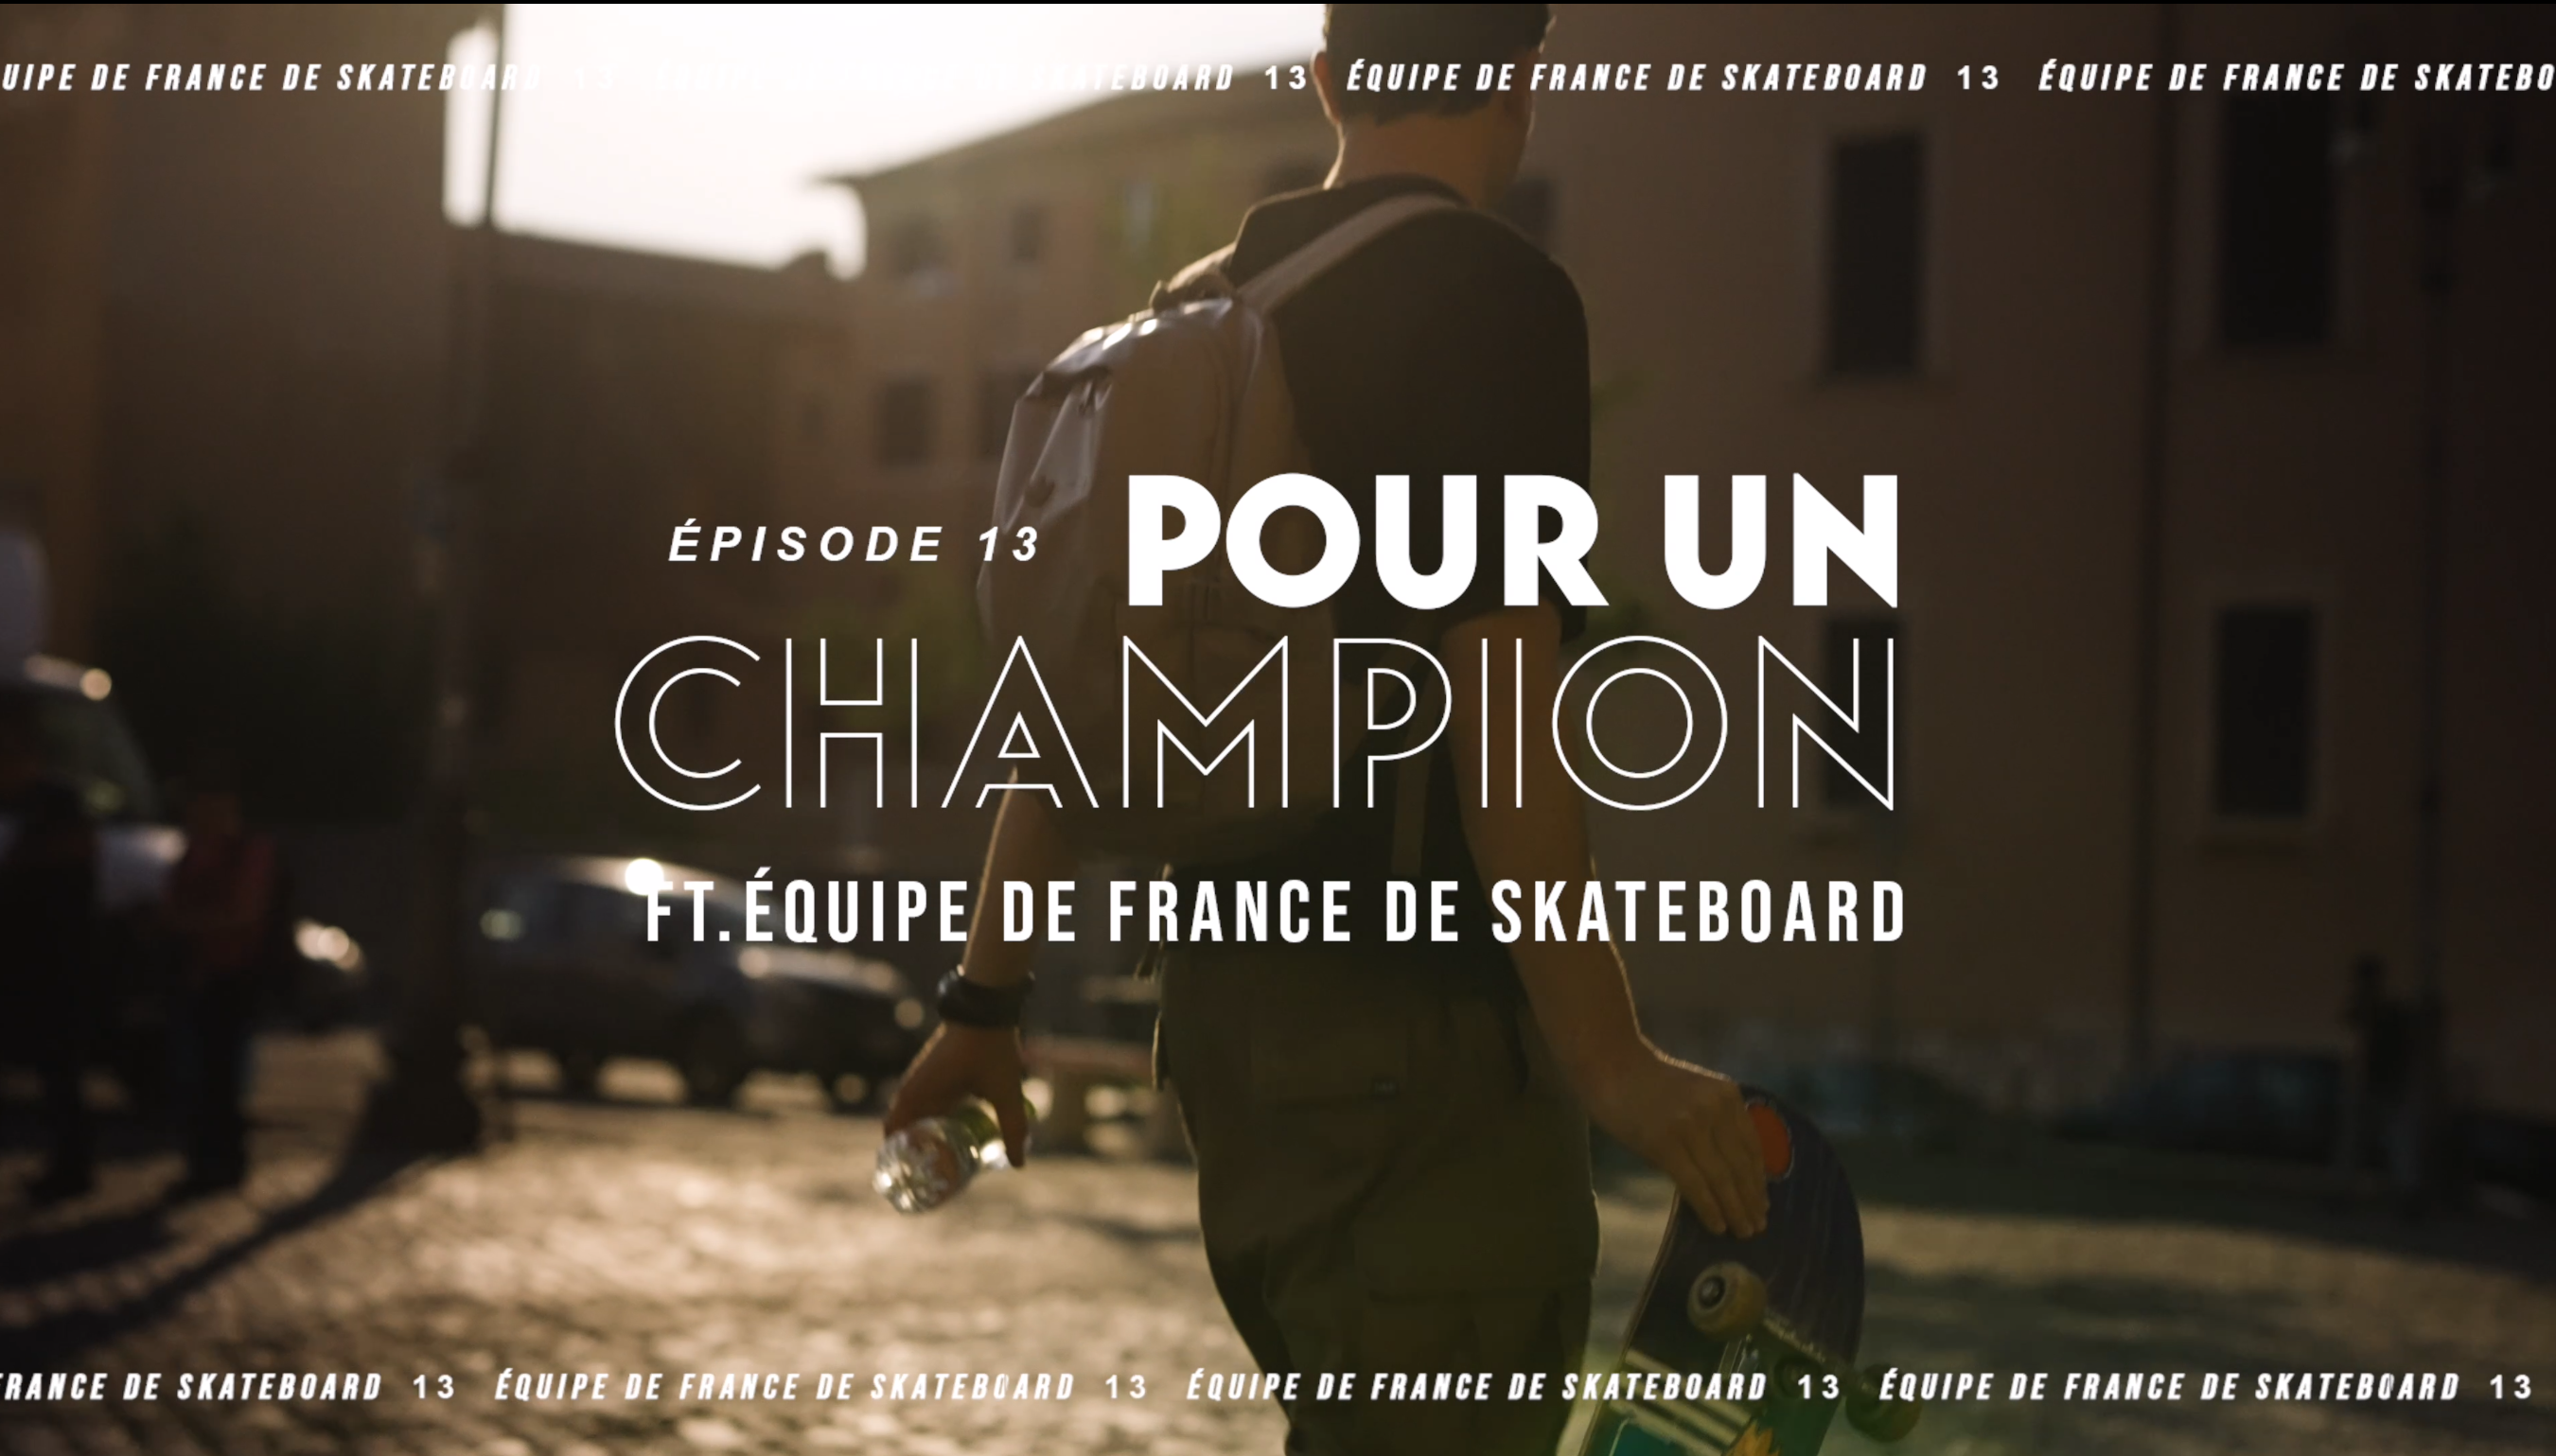 Pour un Champion - Episode 13 - Equipe de France de Skateboard